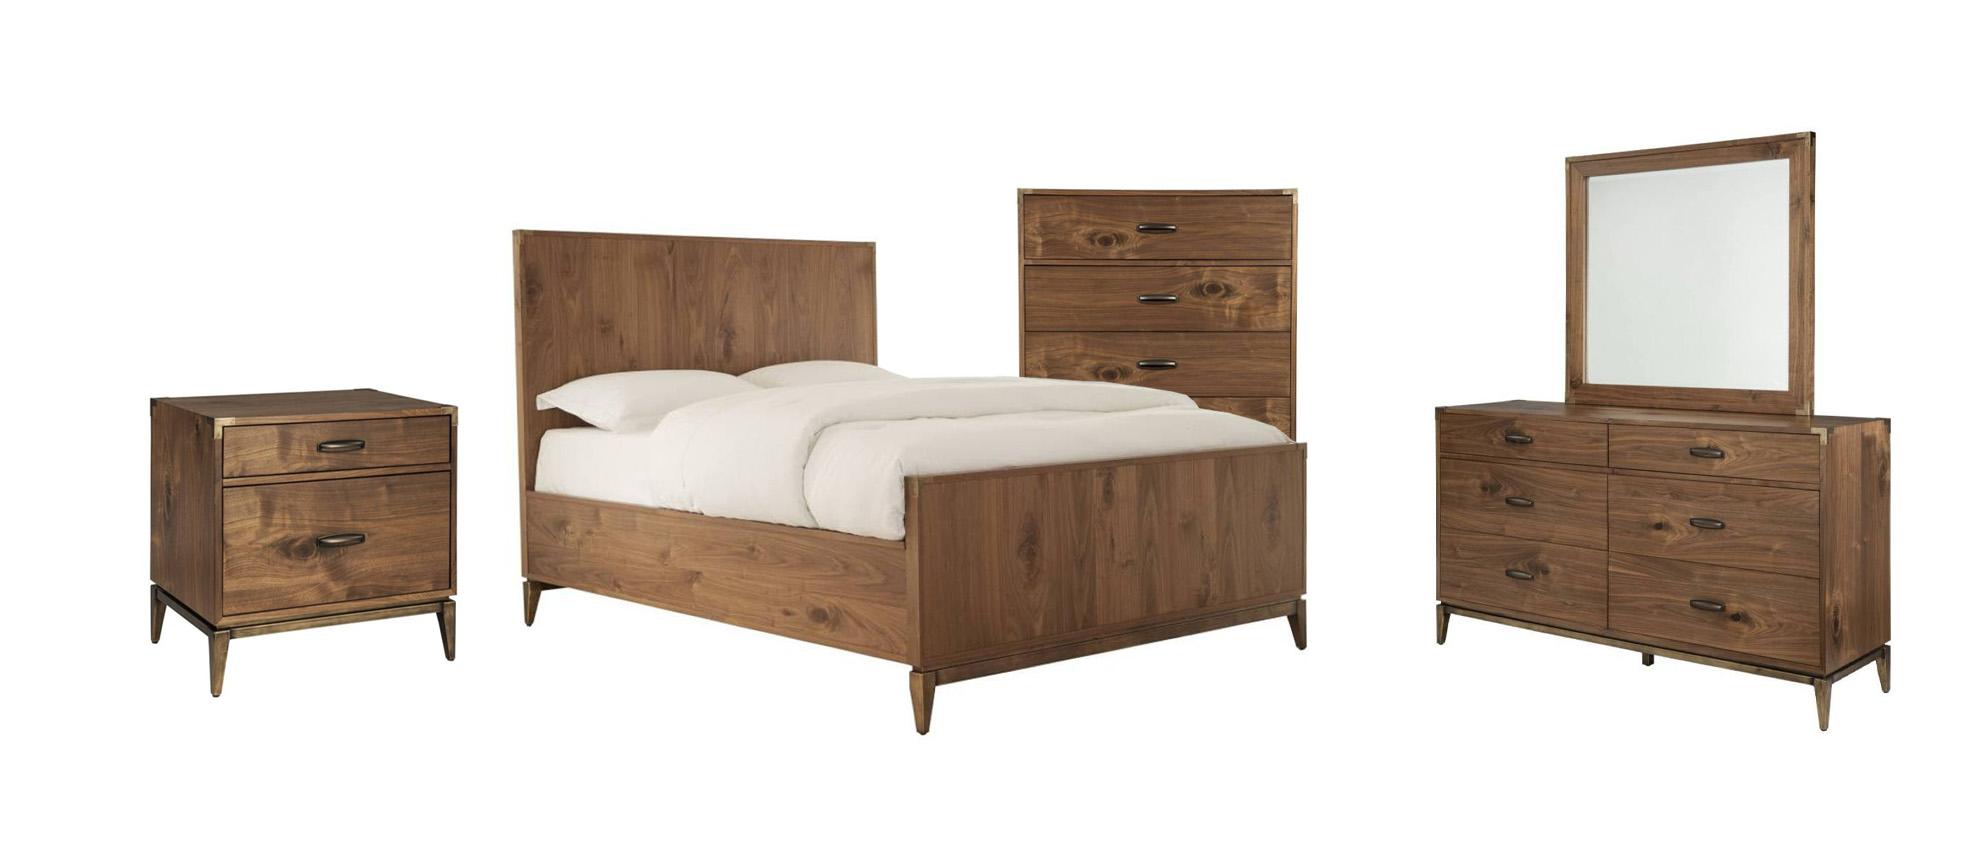 Modus Furniture ADLER Panel Bedroom Set